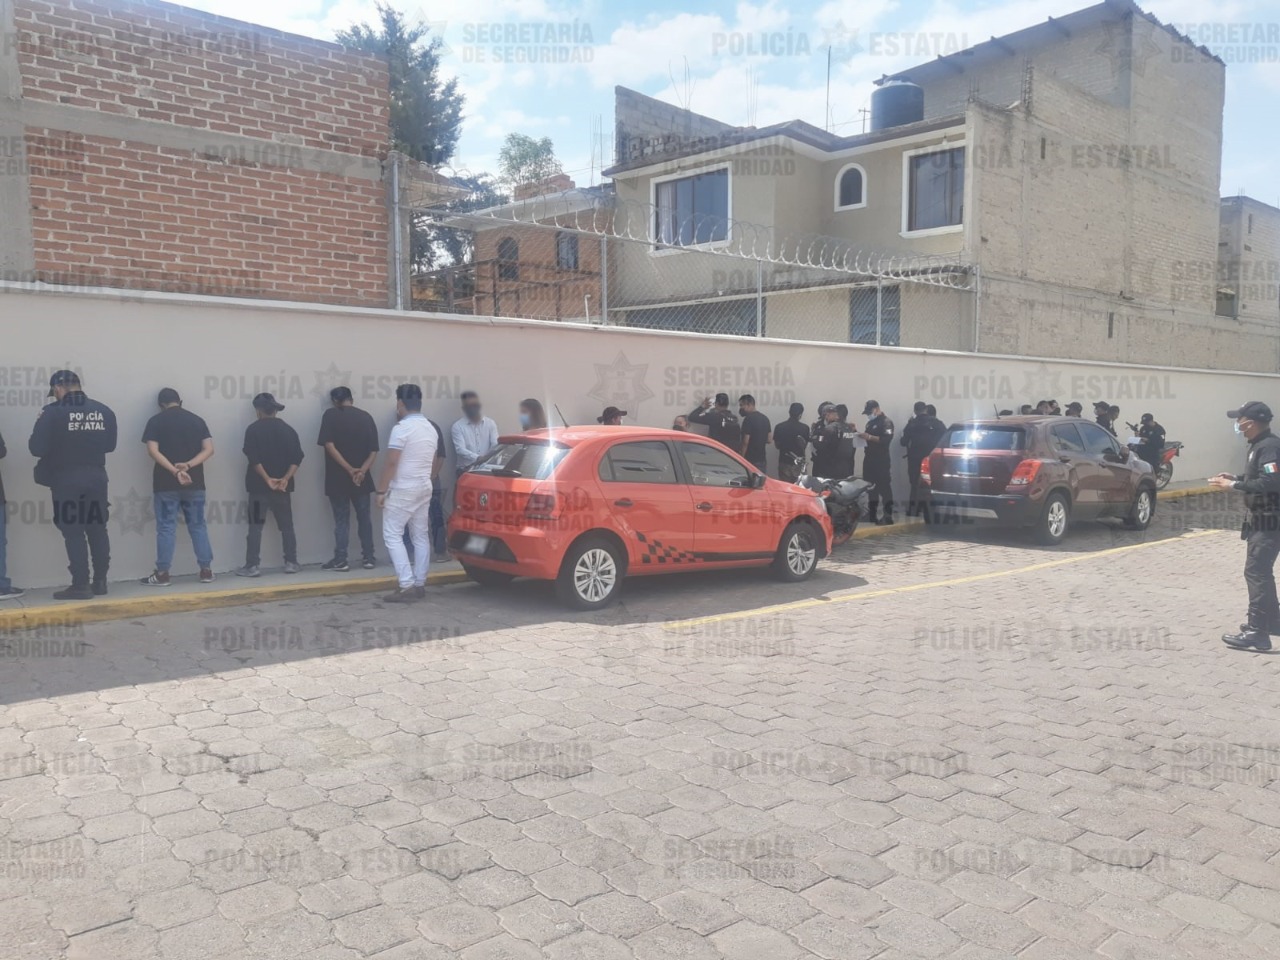 Policías de la secretaría de seguridad detienen a 23 posibles implicados en delitos electorales en Tecamac